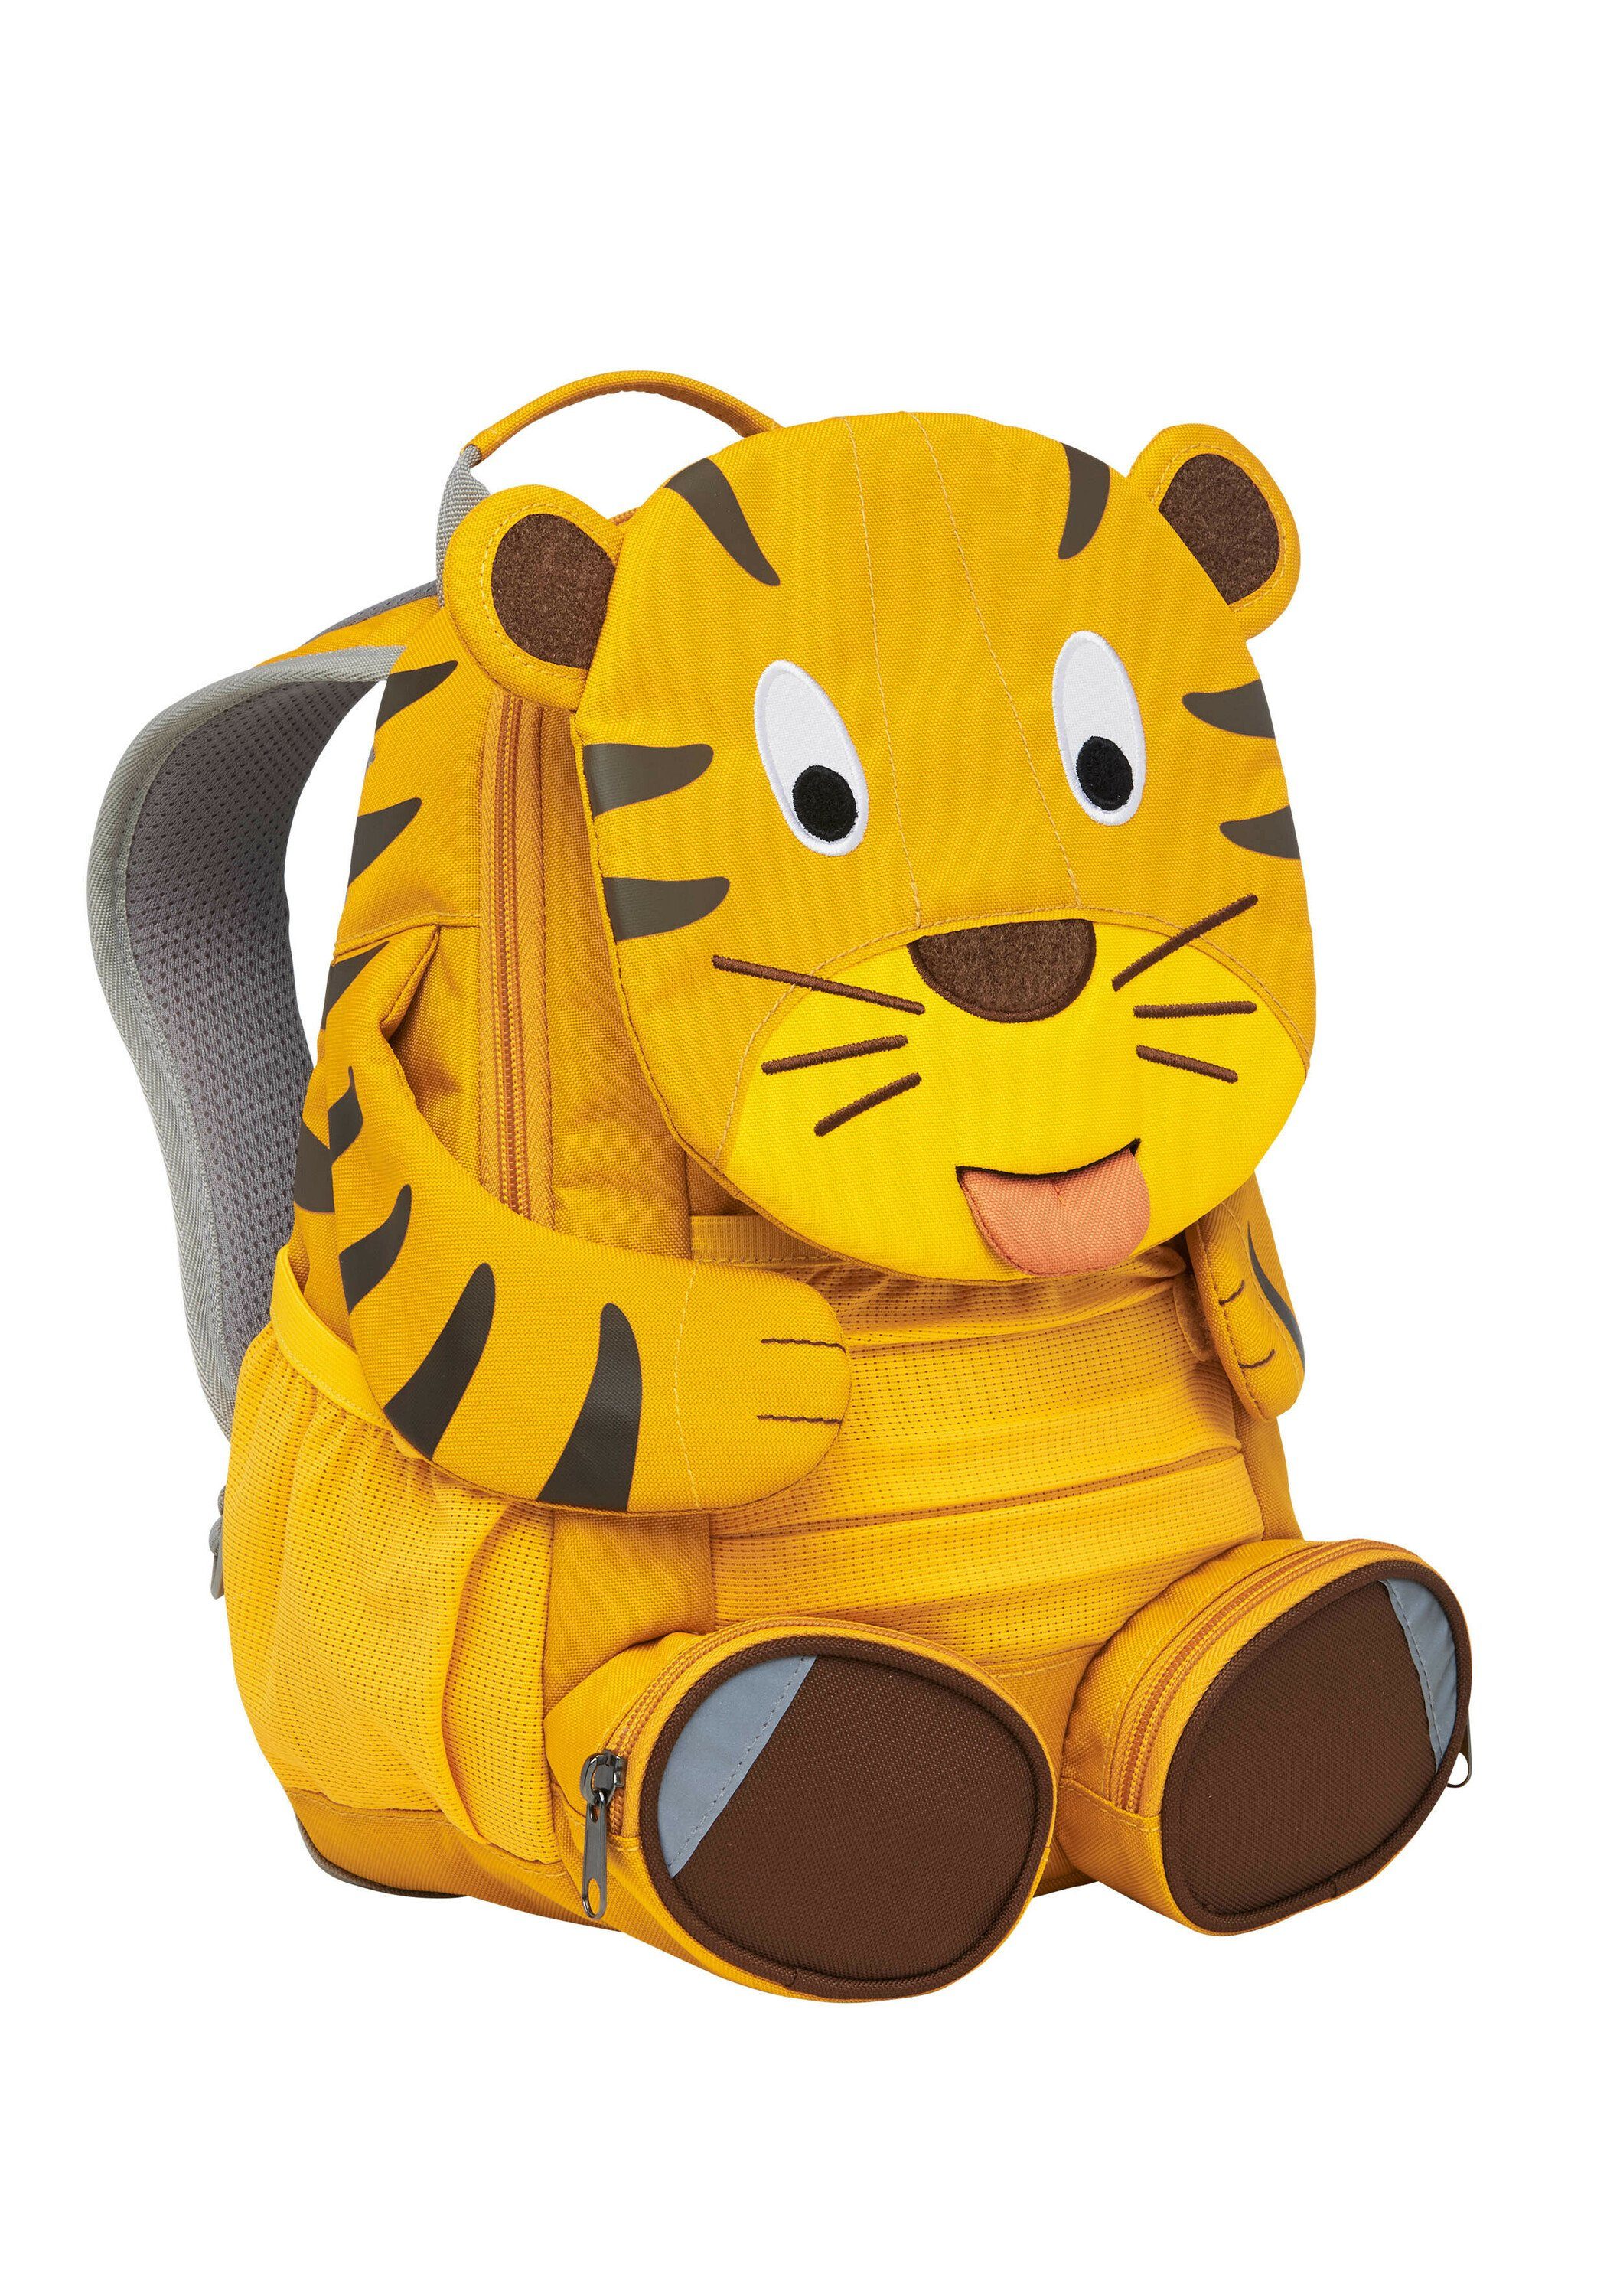 Tiger GROßER TIGER Gelb Kinderrucksack FREUND - Affenzahn